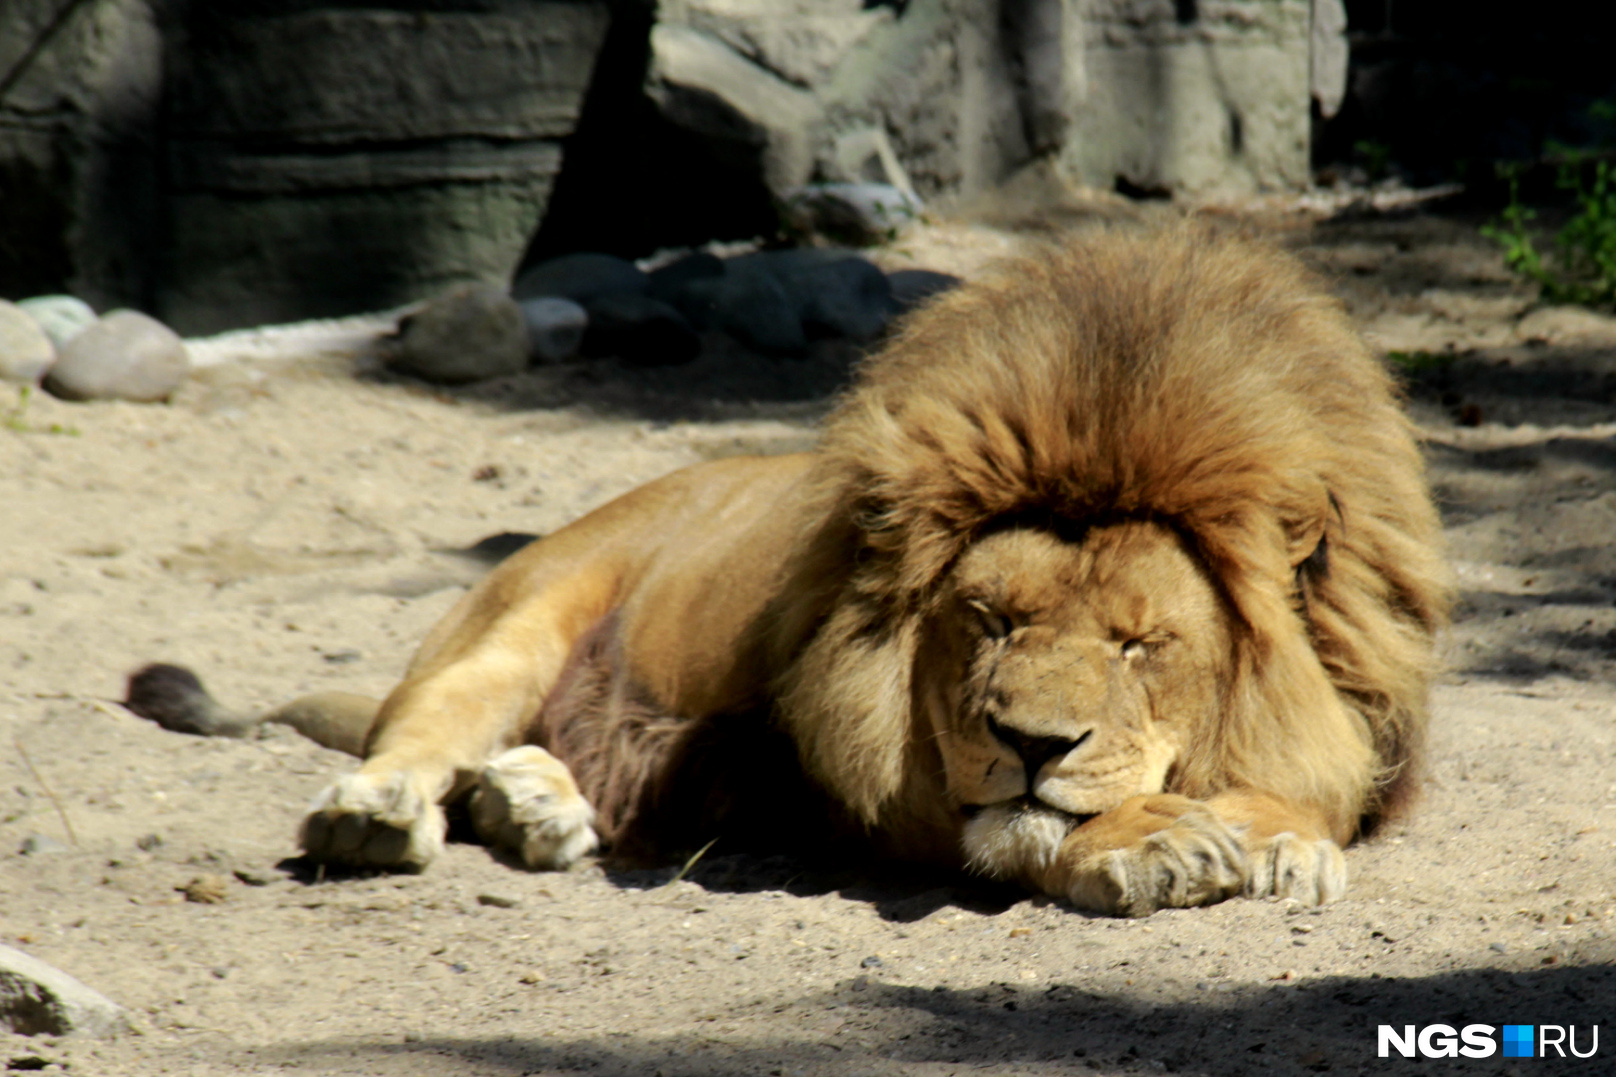 Лев, впрочем, на посетителей внимания не обращает — как и положено королю